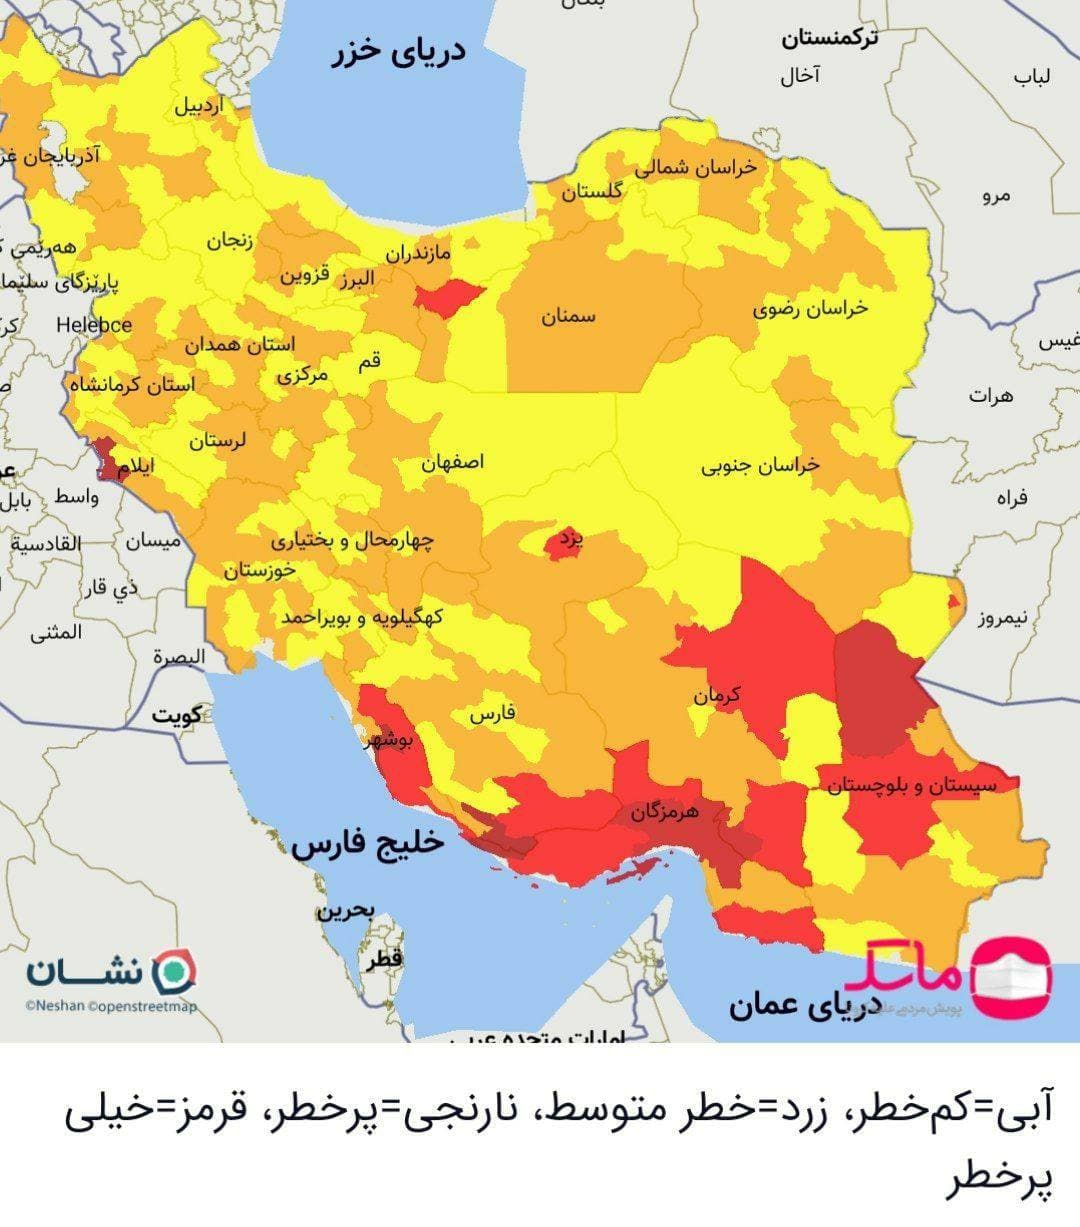 گسترش شهرهای قرمز کرونا از جنوب به مرکز کشور/ احتمال قرمز شدن تهران